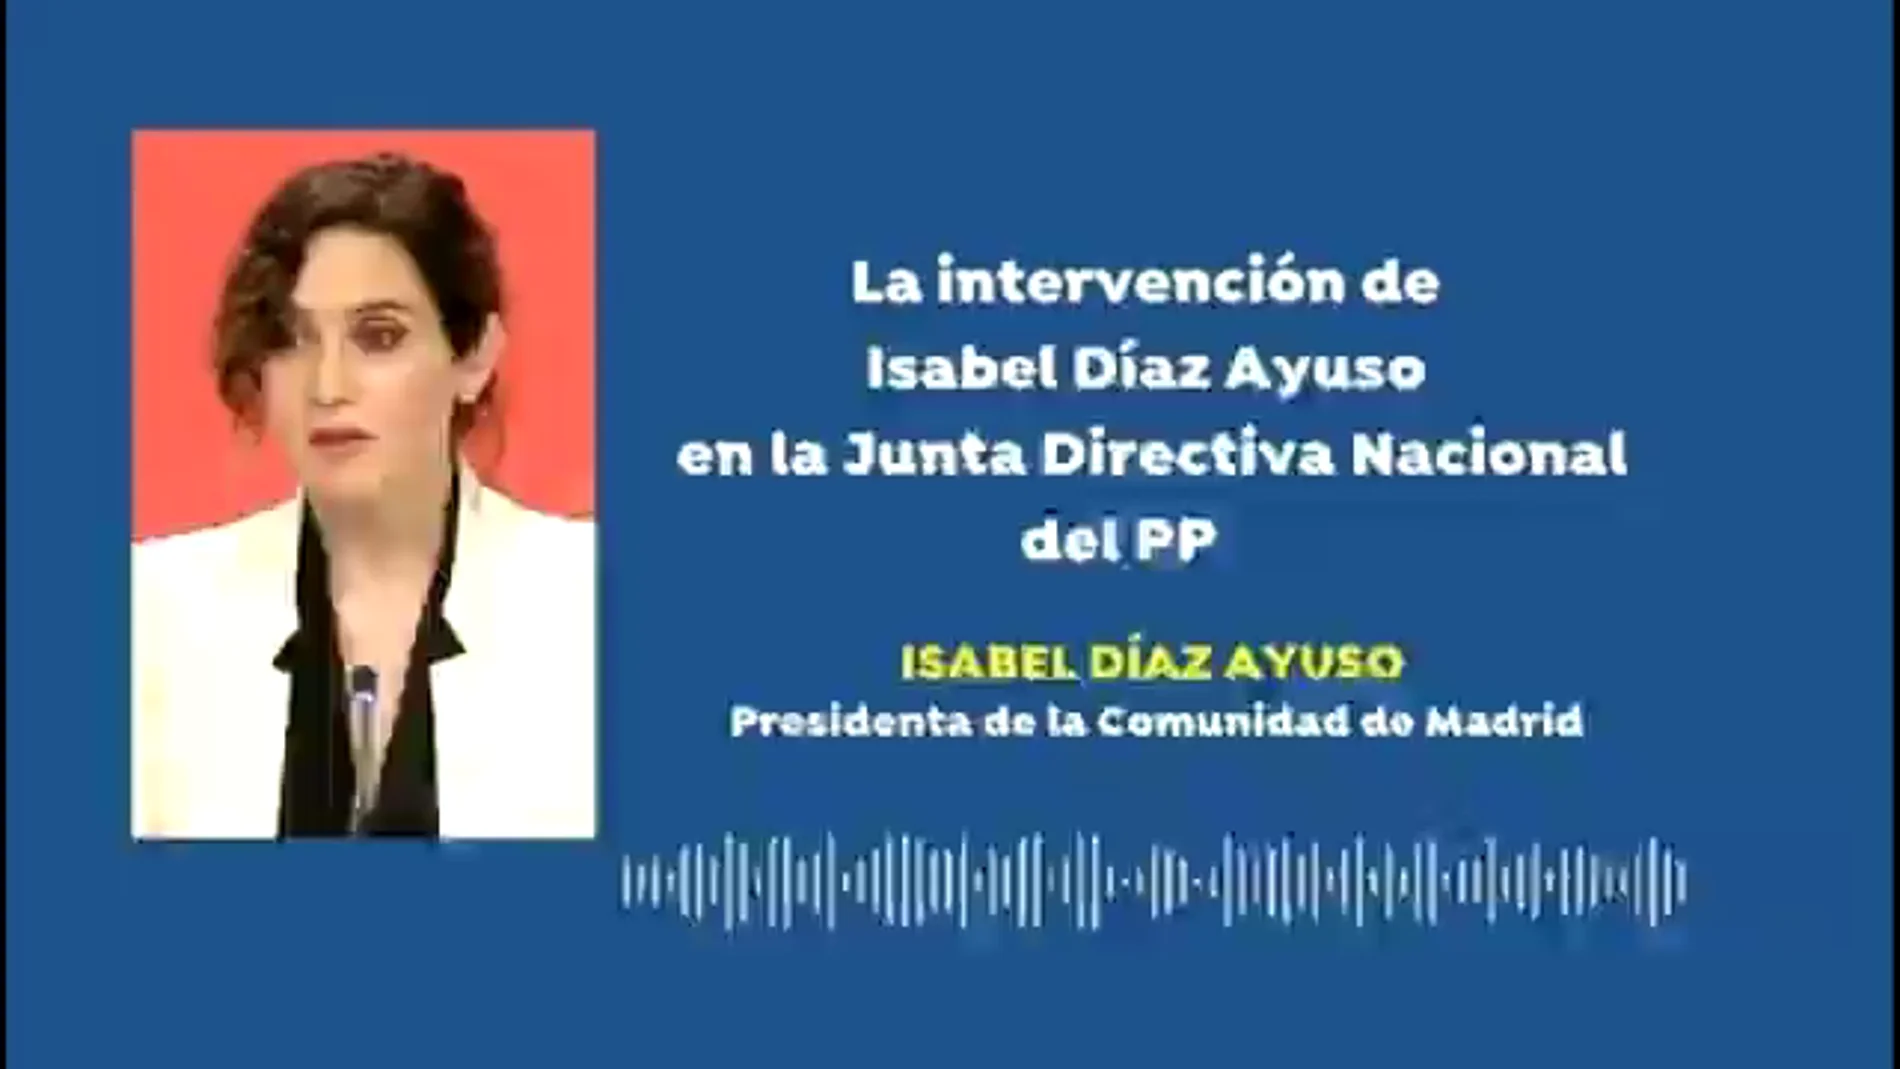 Antena 3 Noticias accede al audio del discurso de Isabel Díaz Ayuso en la Junta Directiva del PP